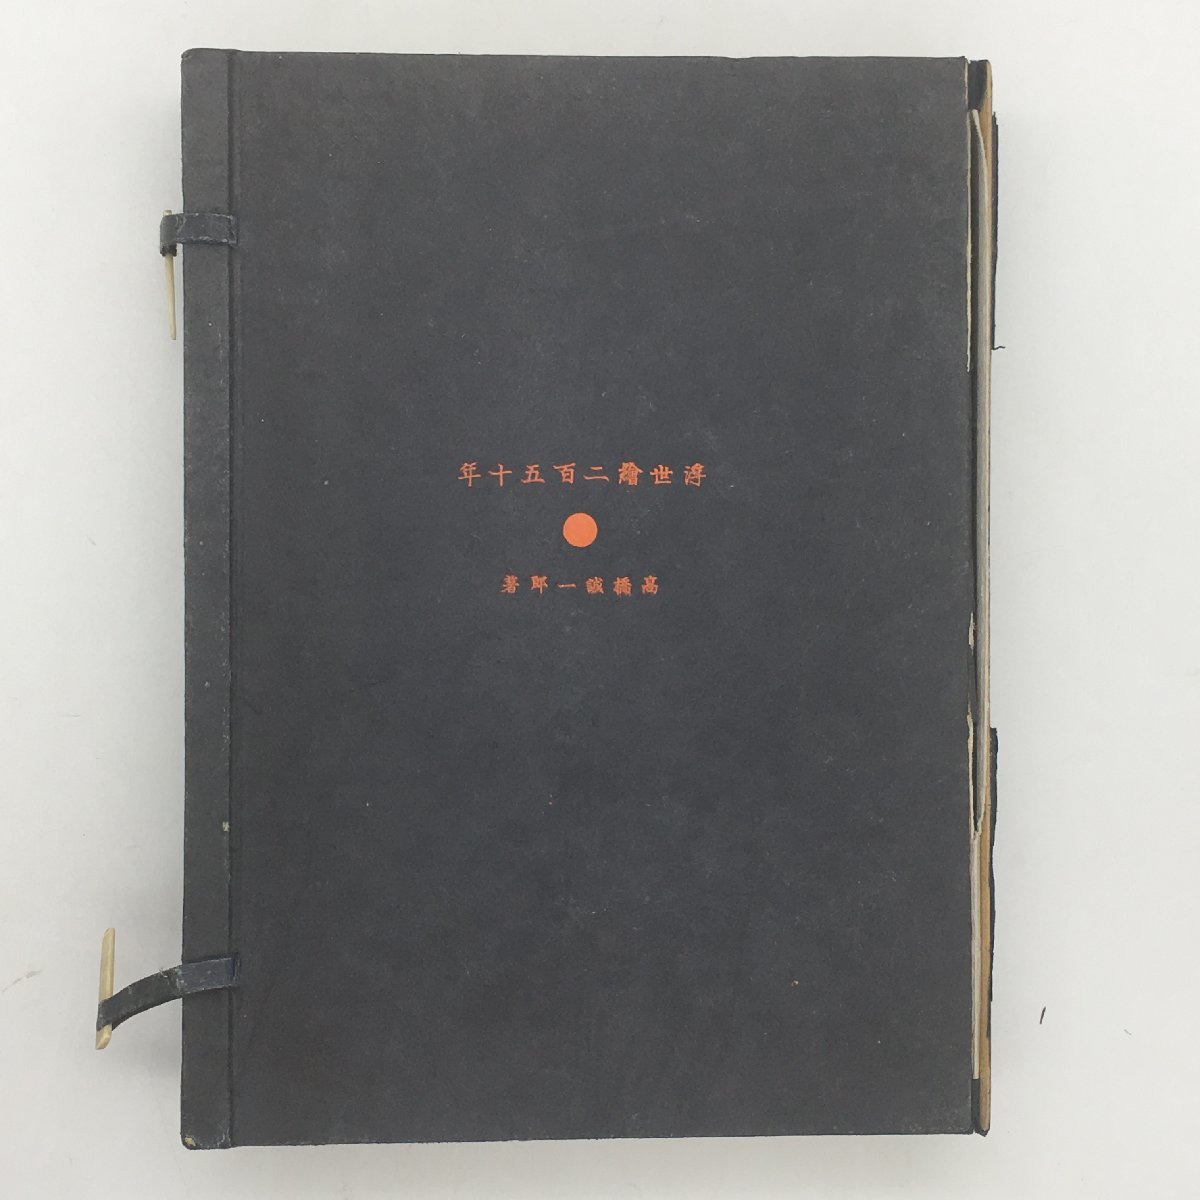 [하루노부 목판화 1권 포함] 다카하시 세이이치로의 우키요에 250년, 중앙공론신술출판, 1938, 전쟁 전, 우키요에, 니시키에 u1y1817, 그림, 우키요에, 인쇄물, 다른 사람